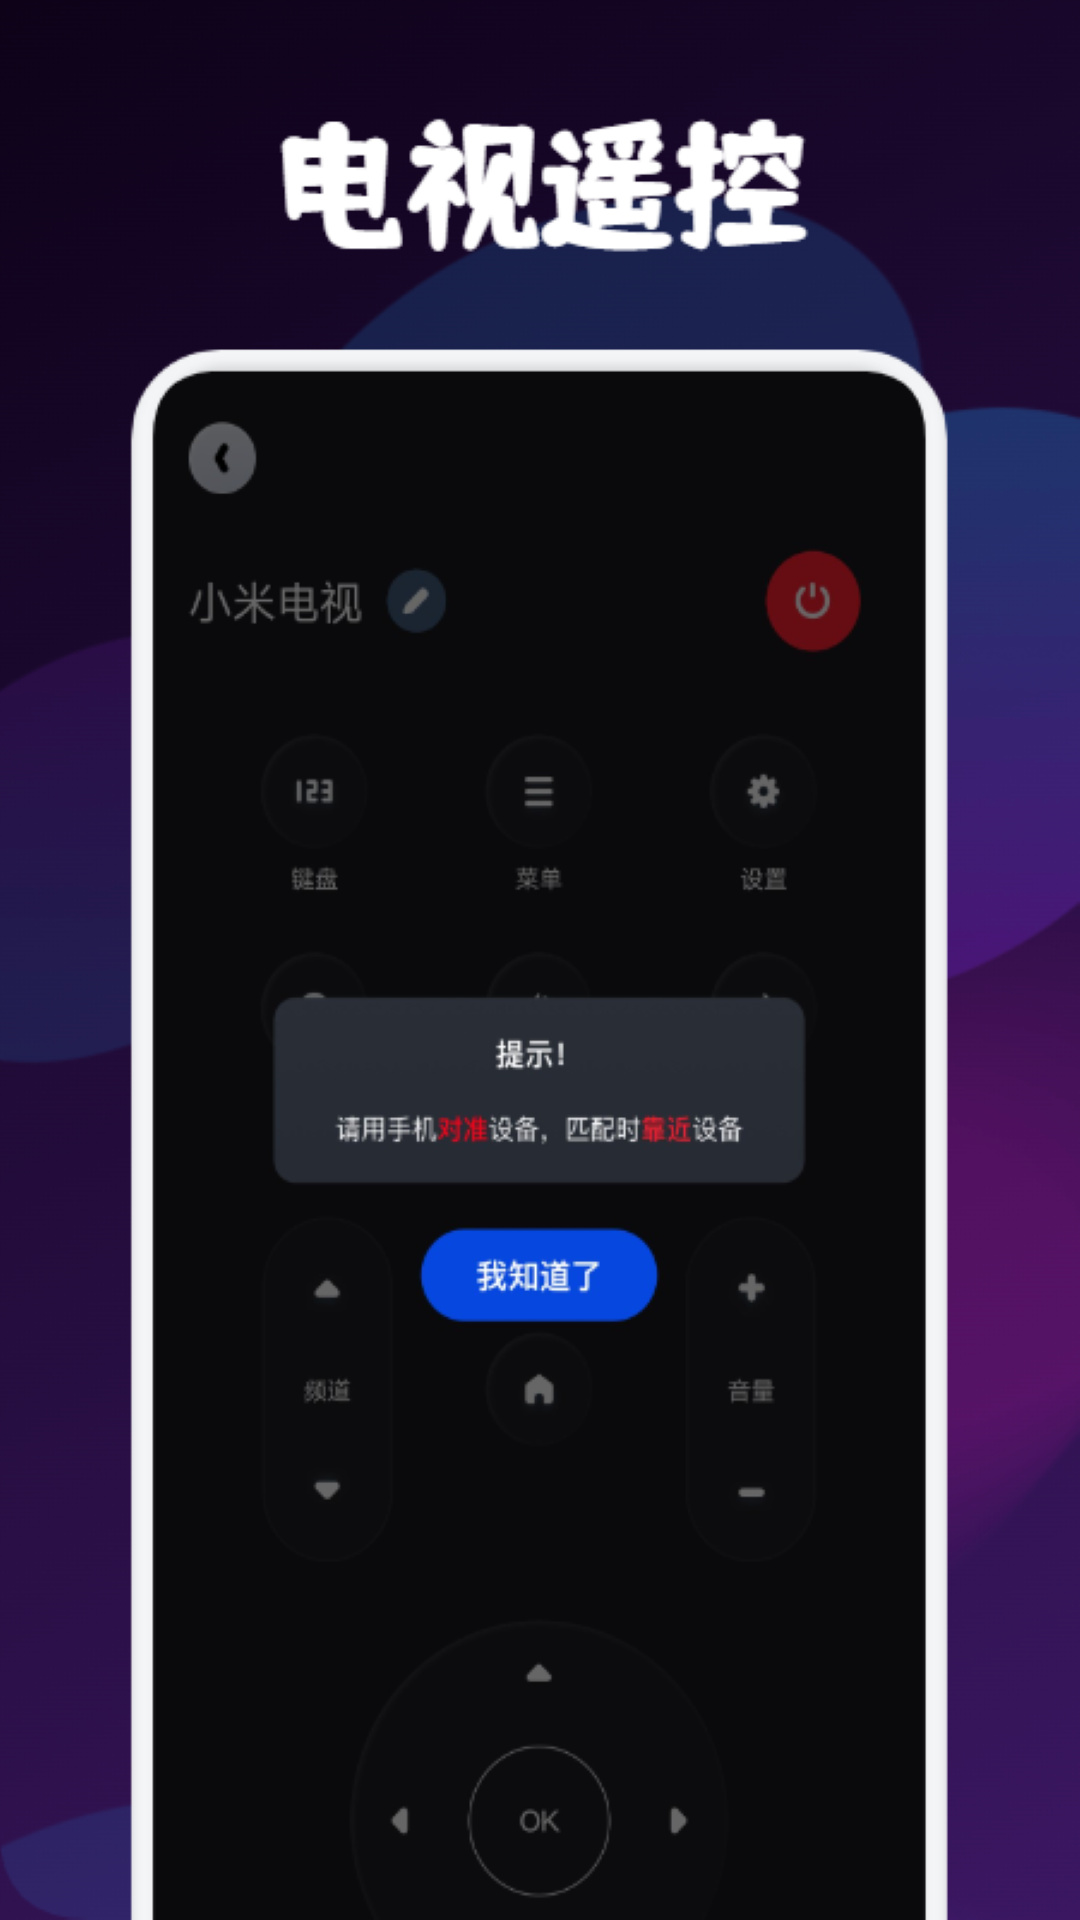 遥控器万能博冉版官方app图片1